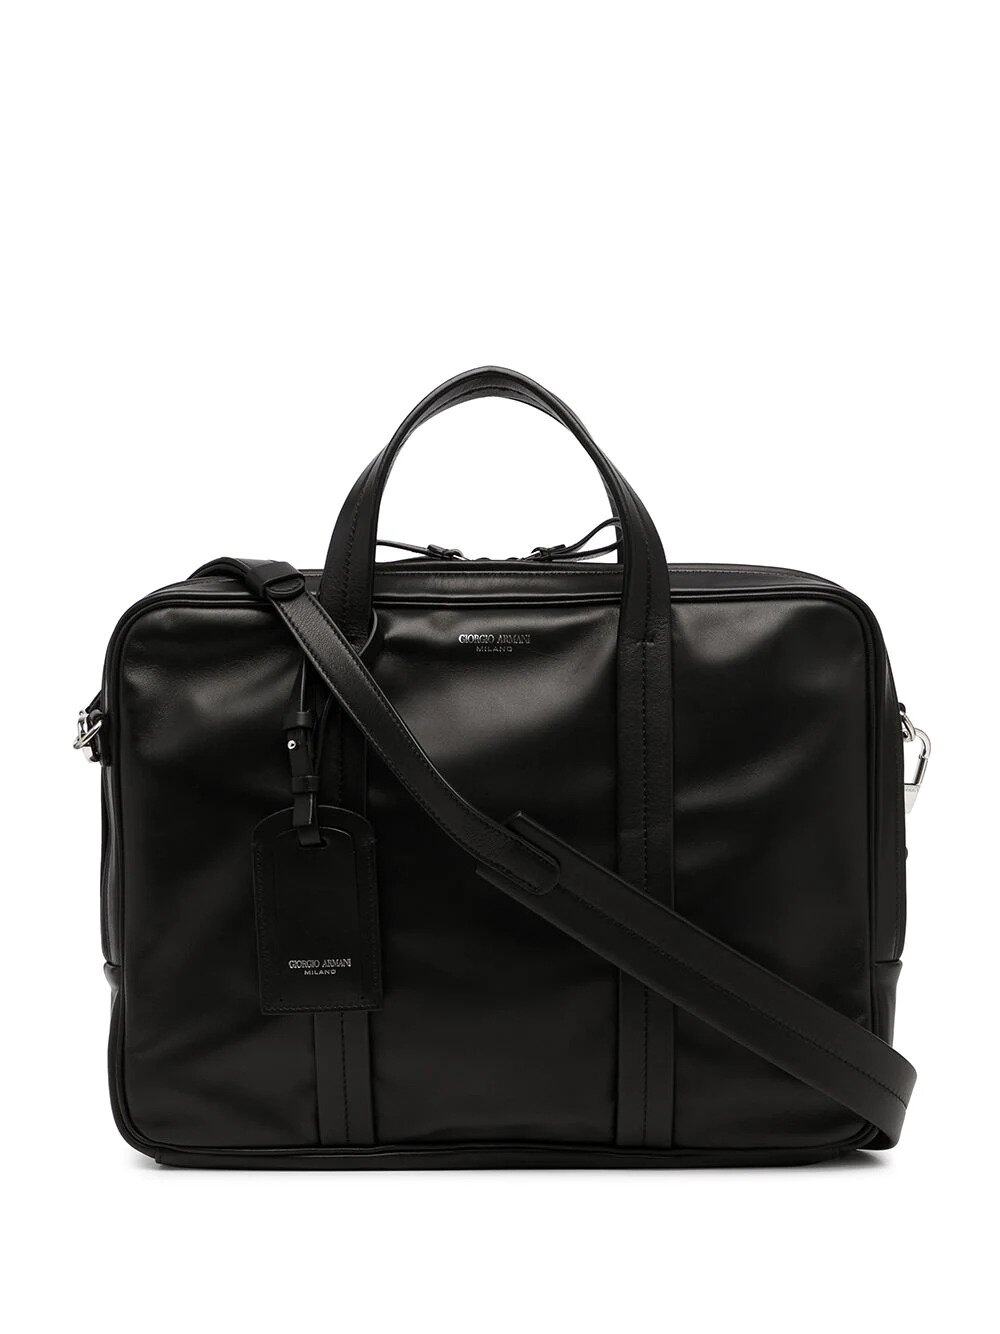 Giorgio Armani leather laptop bag